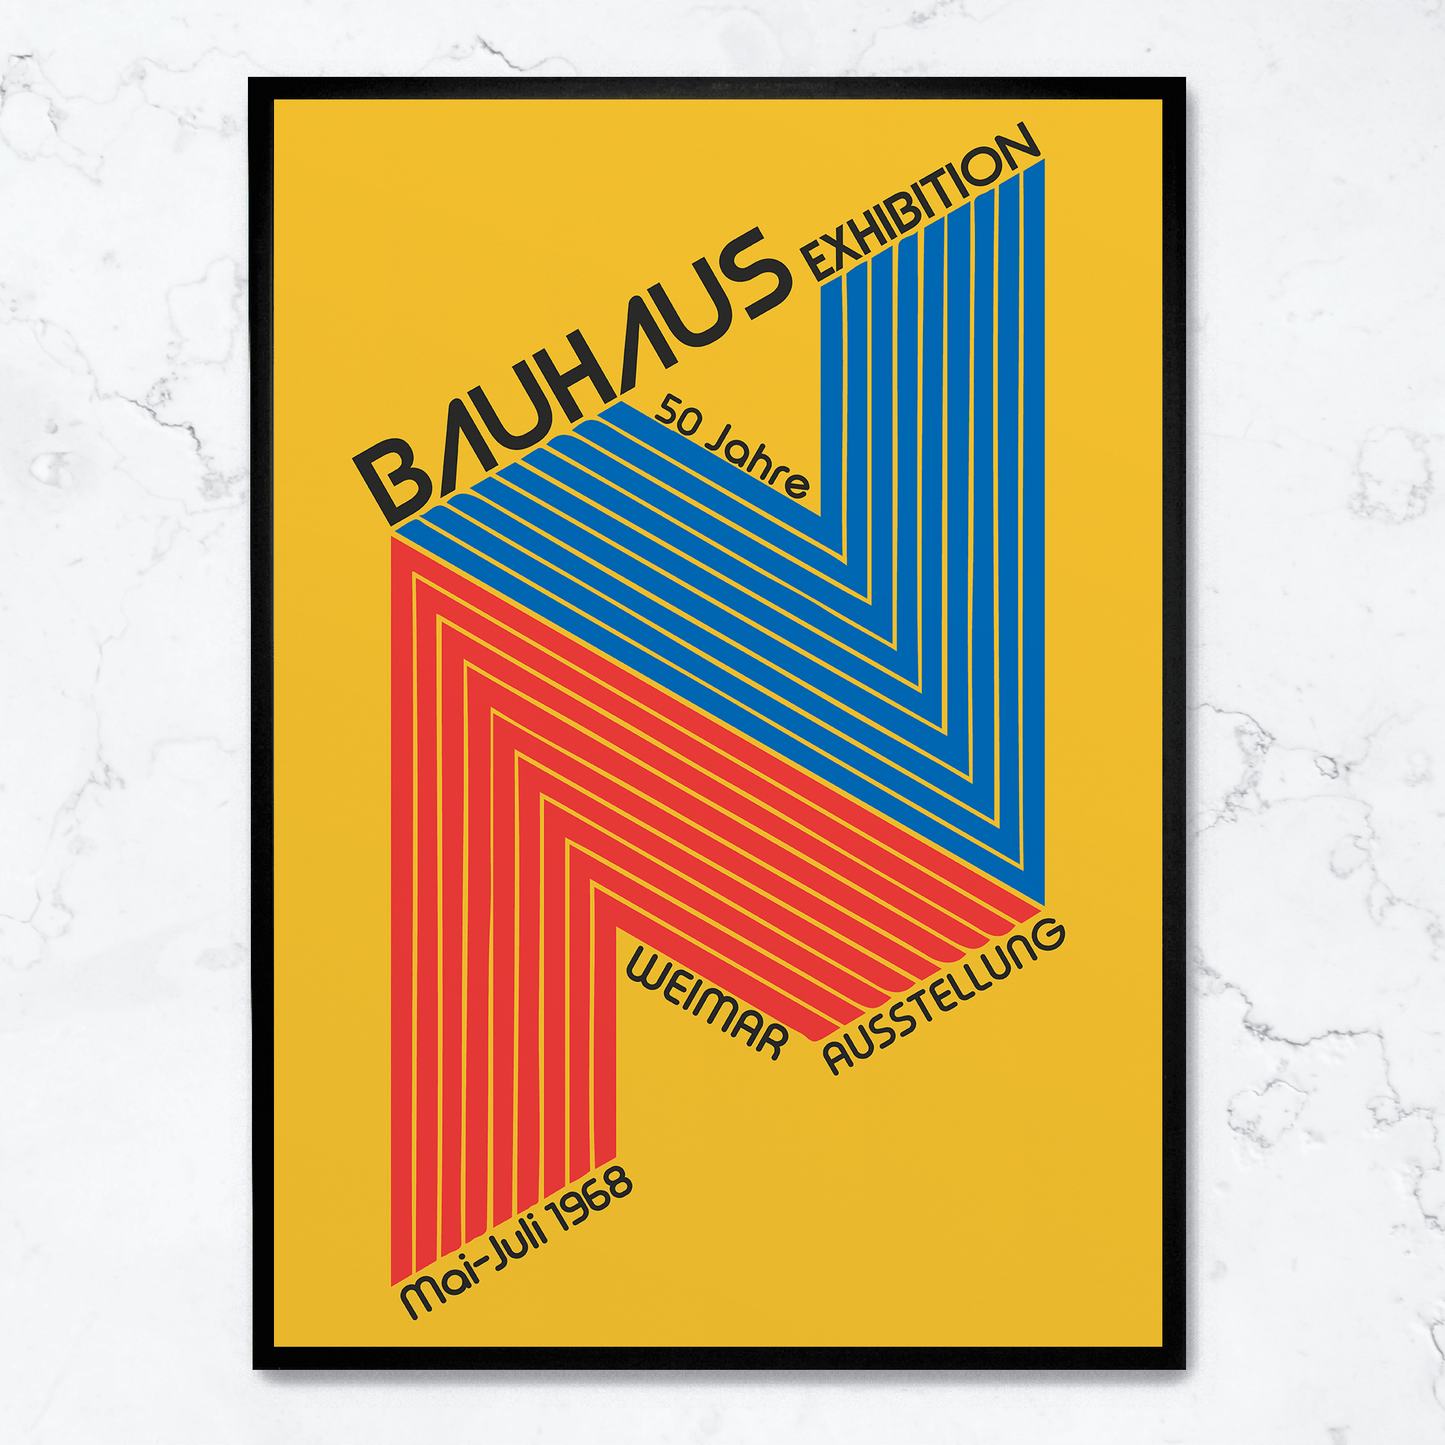 Bauhaus 50 Jahre